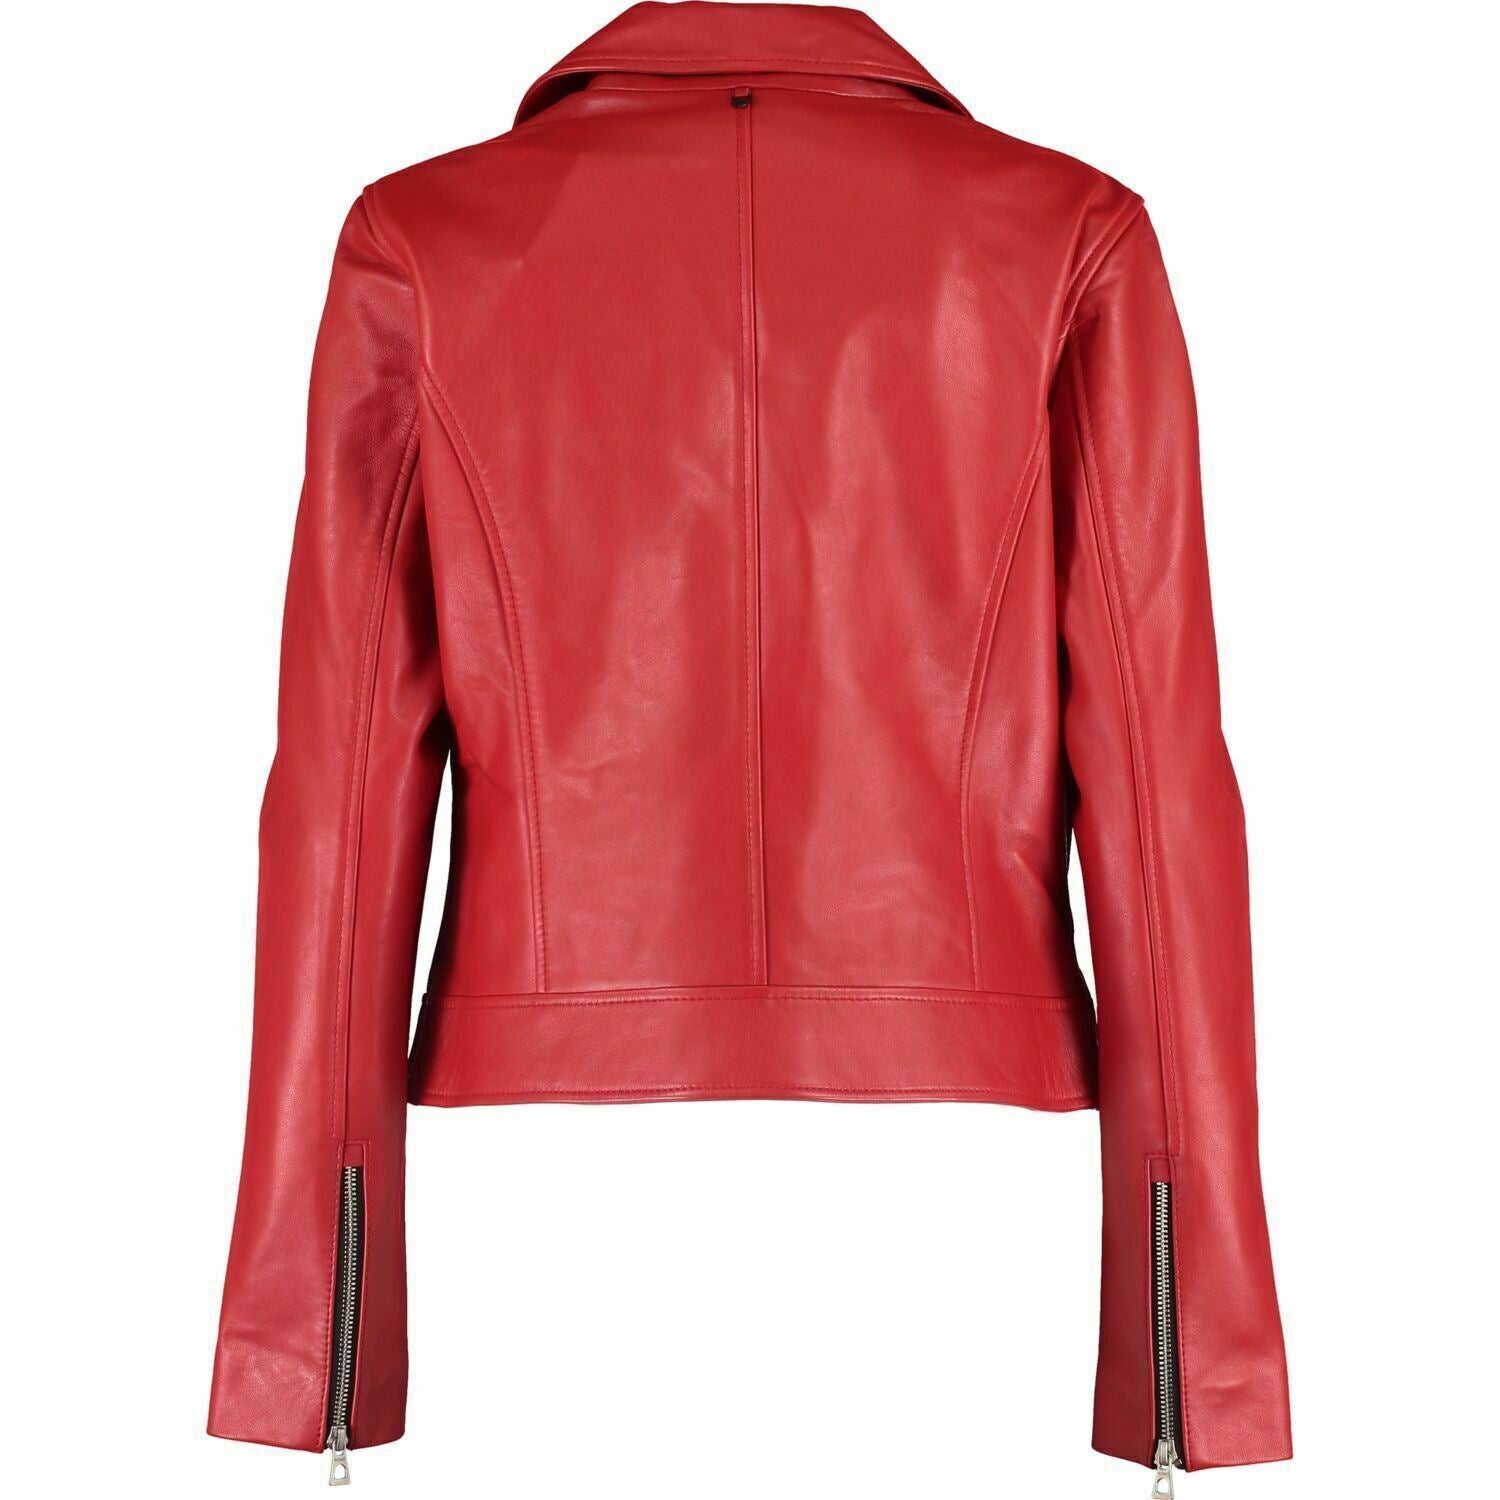 RUDSAK - MAHIRA Women's Red Genuine Leather Biker Jacket, size XS